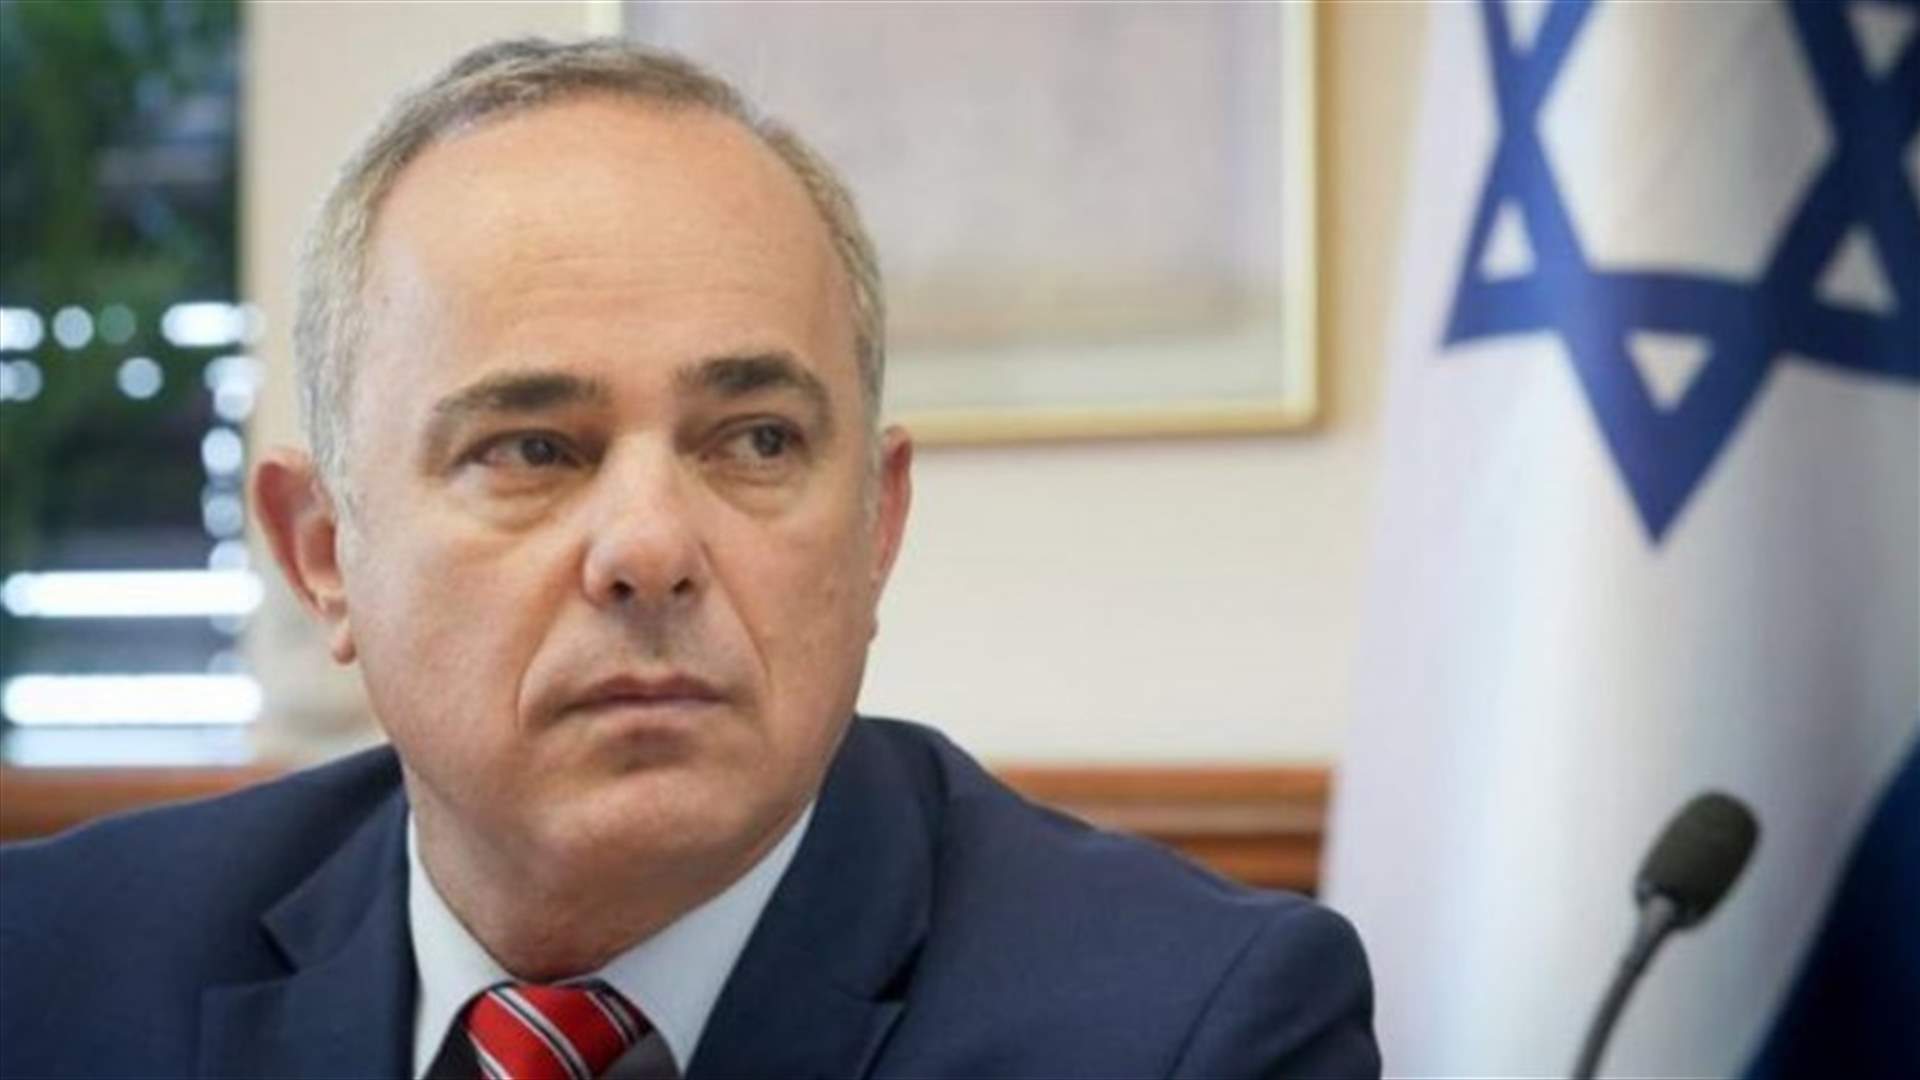 وزير الطاقة الإسرائيلي: نتوقع انطلاق المحادثات مع لبنان بملف الحدود البحرية خلال شهر